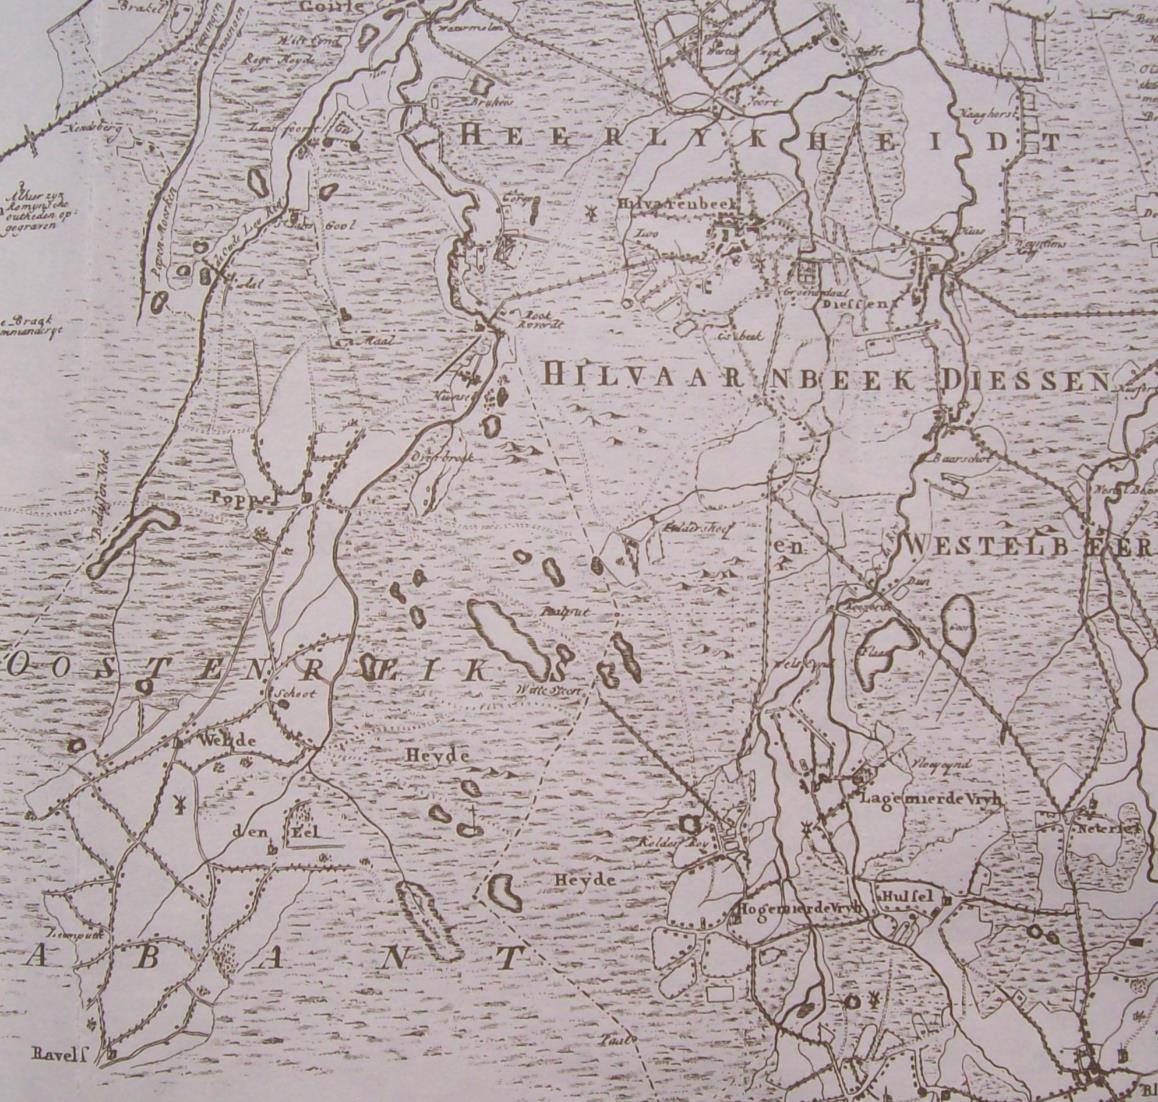 Genealogie van Hermans Dit fragment van een kaart van Hendrik Verhees uit 1794 toont de streek tussen Tilburg en Turnhout. Op de kaart vinden we onder meer Goirle, Hilvarenbeek, Ravels (B.